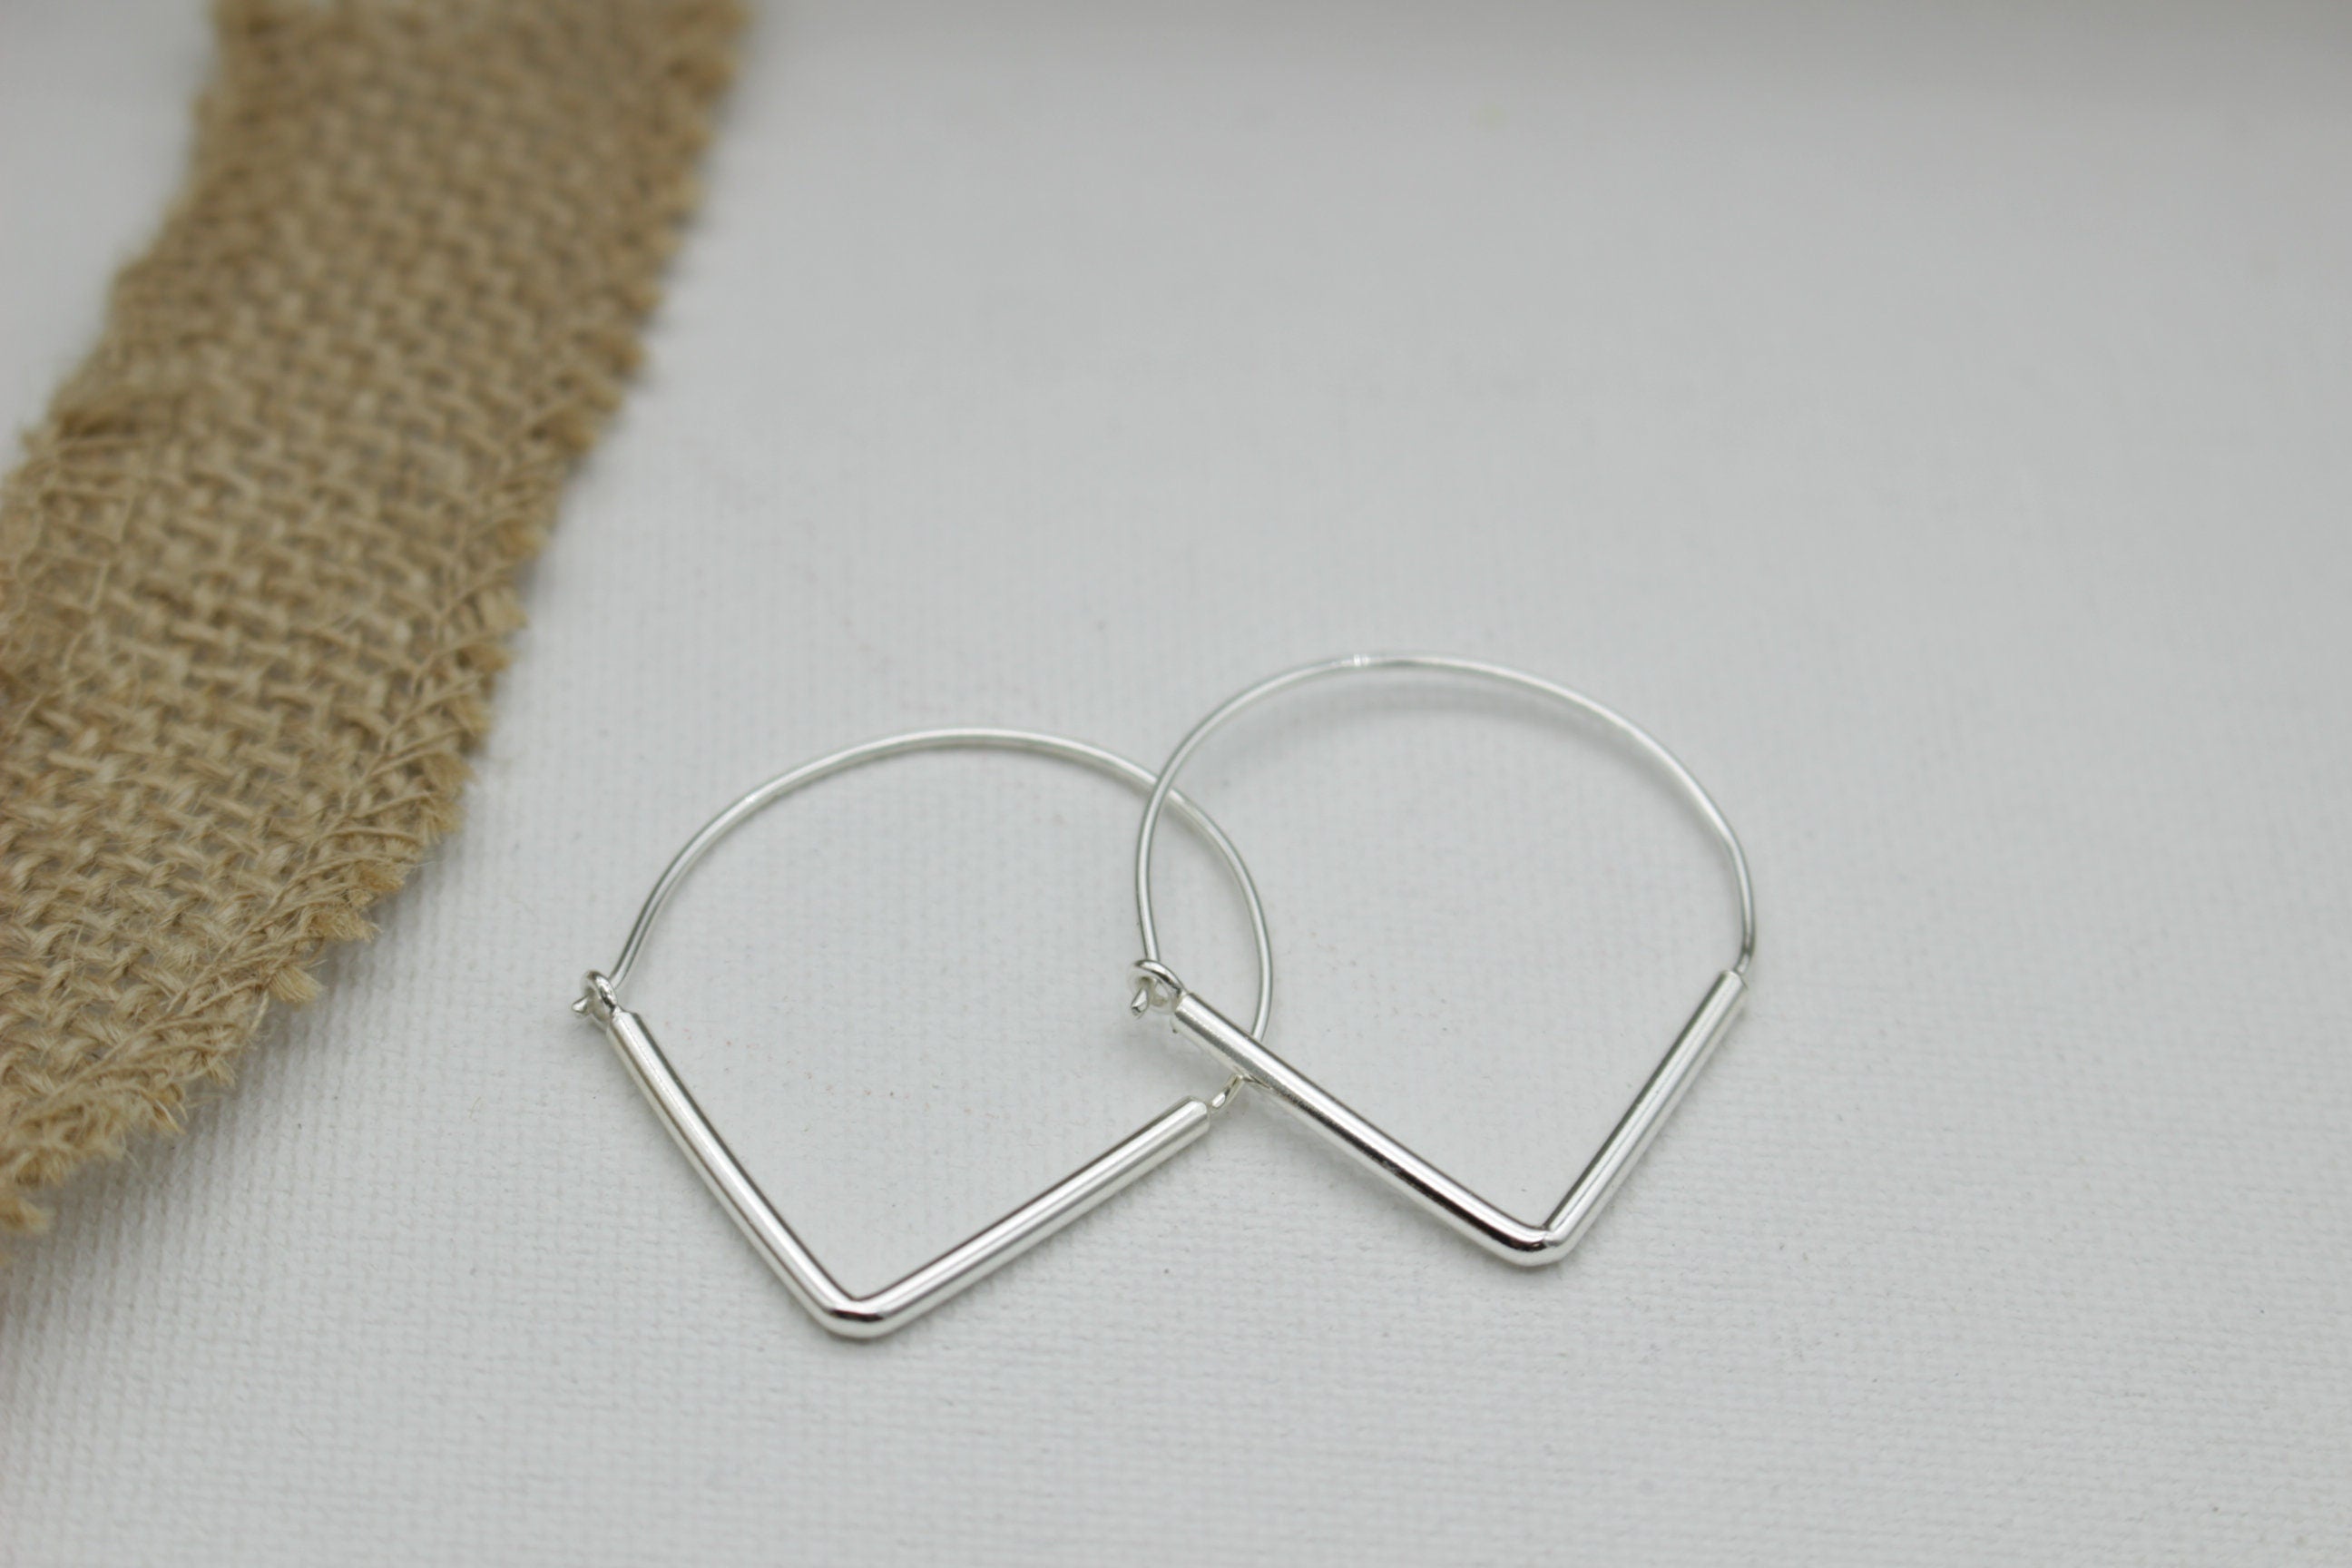 Triangle sterling silver hoop earrings - geometric hoops - sterling silver hoops - boho hoops - gift for her - jewelry hoop earrings